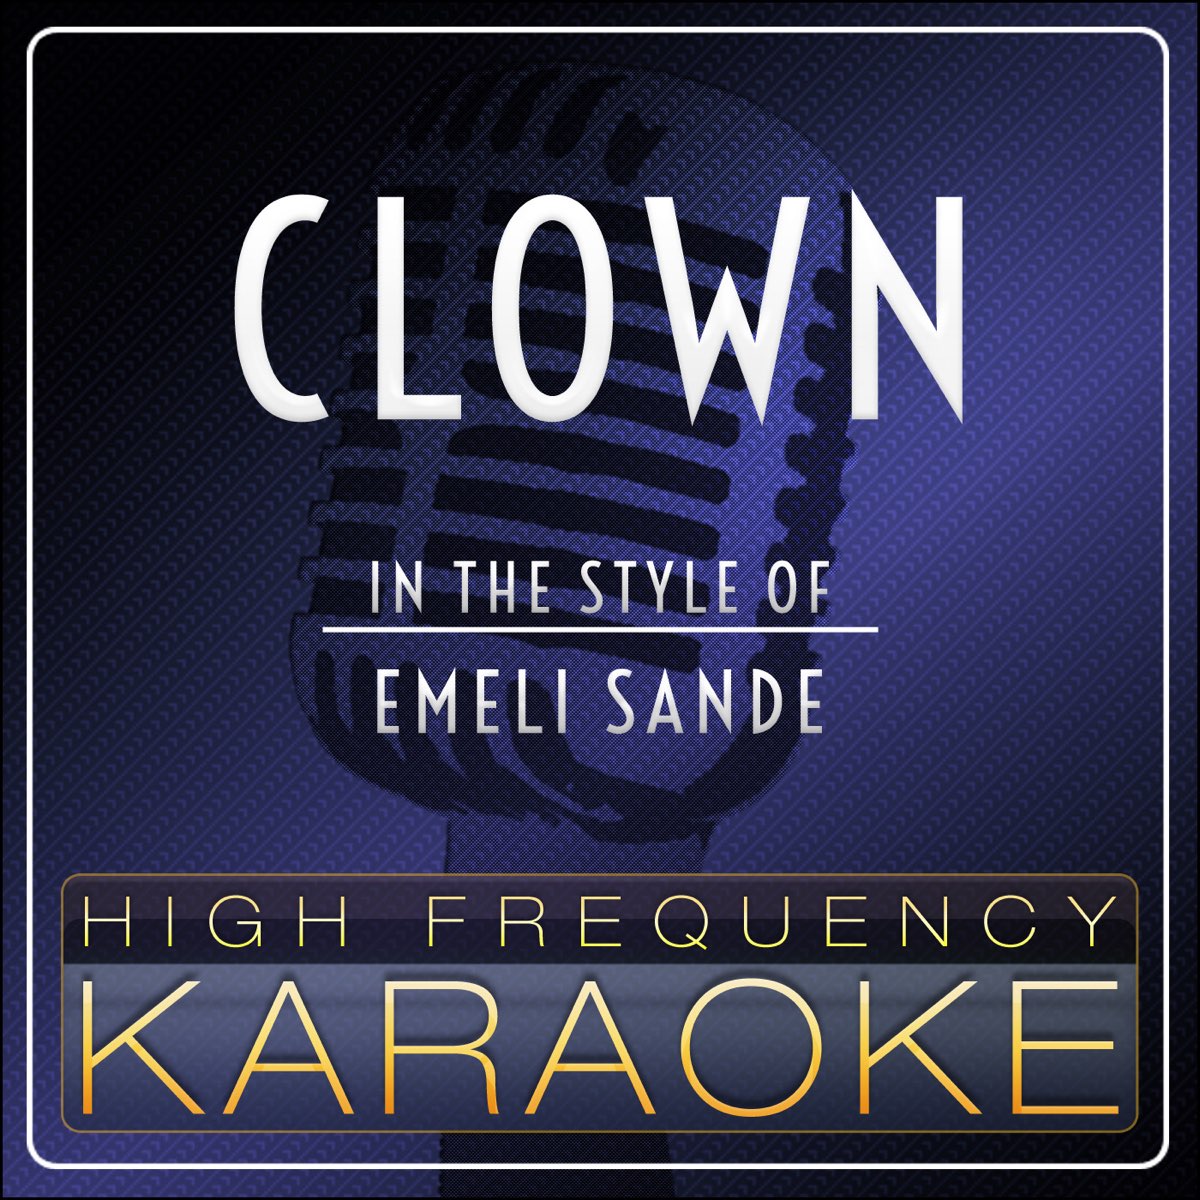 Clown (Karaoke Version) [In the Style of Emeli Sande] - Single by High  Frequency Karaoke on Apple Music